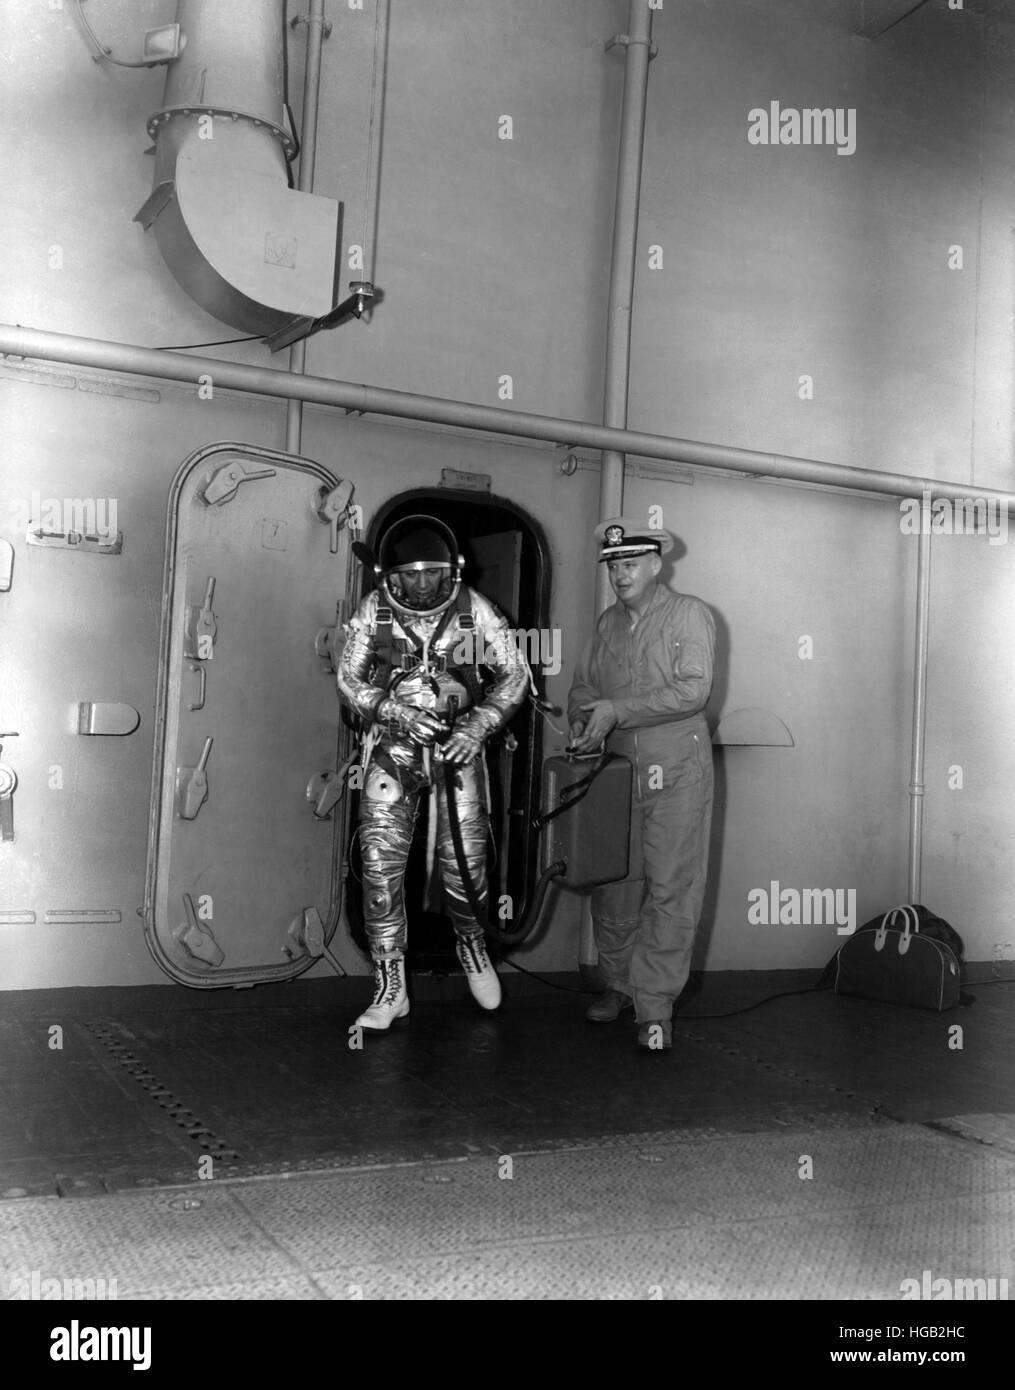 Malcom Commandant D. Ross dans son costume de l'espace à bord du USS ANTIETAM, 1961 Strato-Lab au cours de projet. Banque D'Images